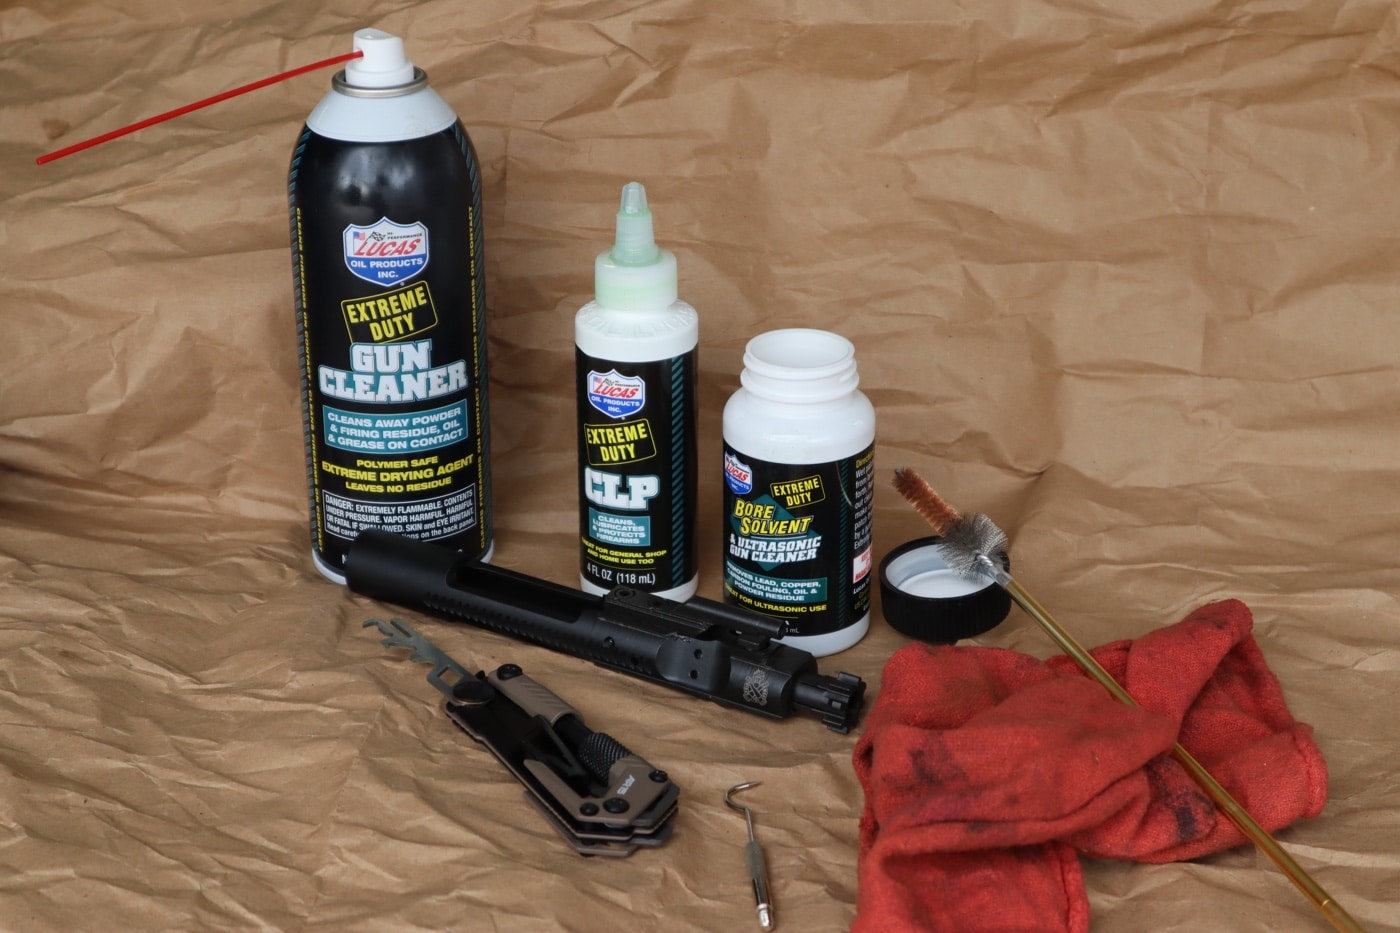 Set of 20 Lucas Oil Gun Oil Extreme Duty 1.00 oz Squeeze Bottle